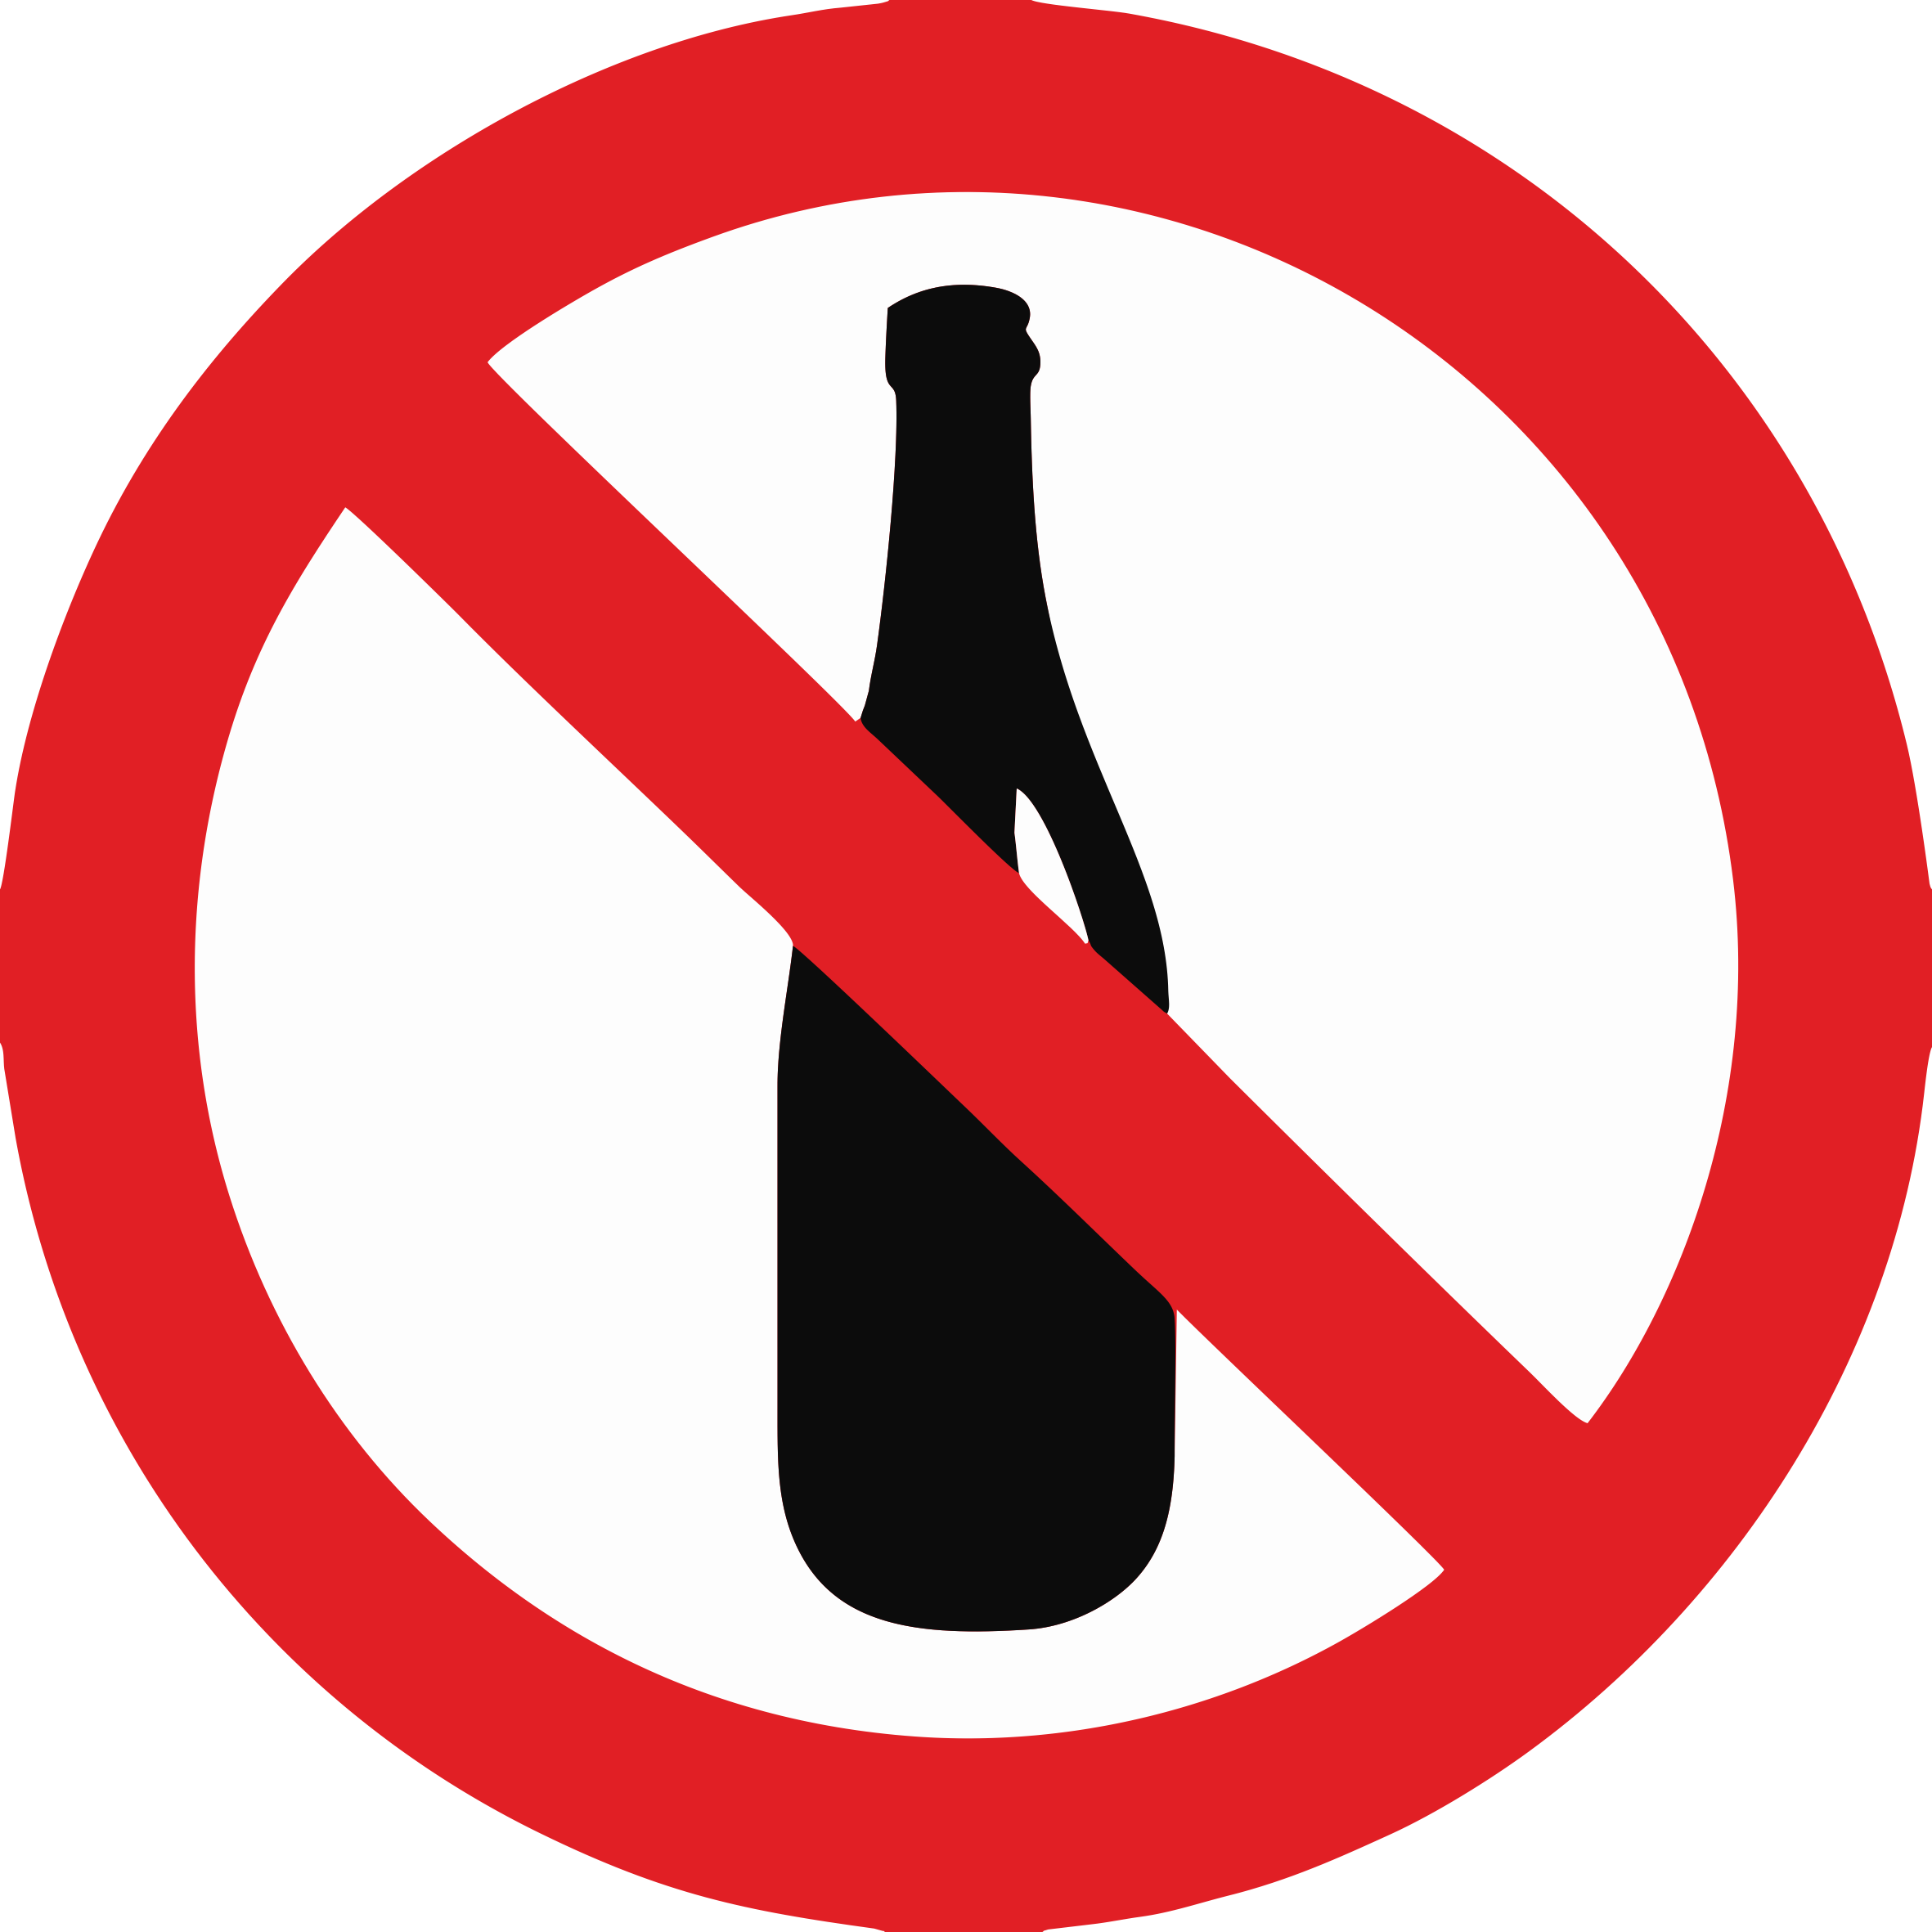 Запрещается картинки. Знак запрета. Пить запрещено. Зачеркнутая бутылка. Алкоголь запрещен.